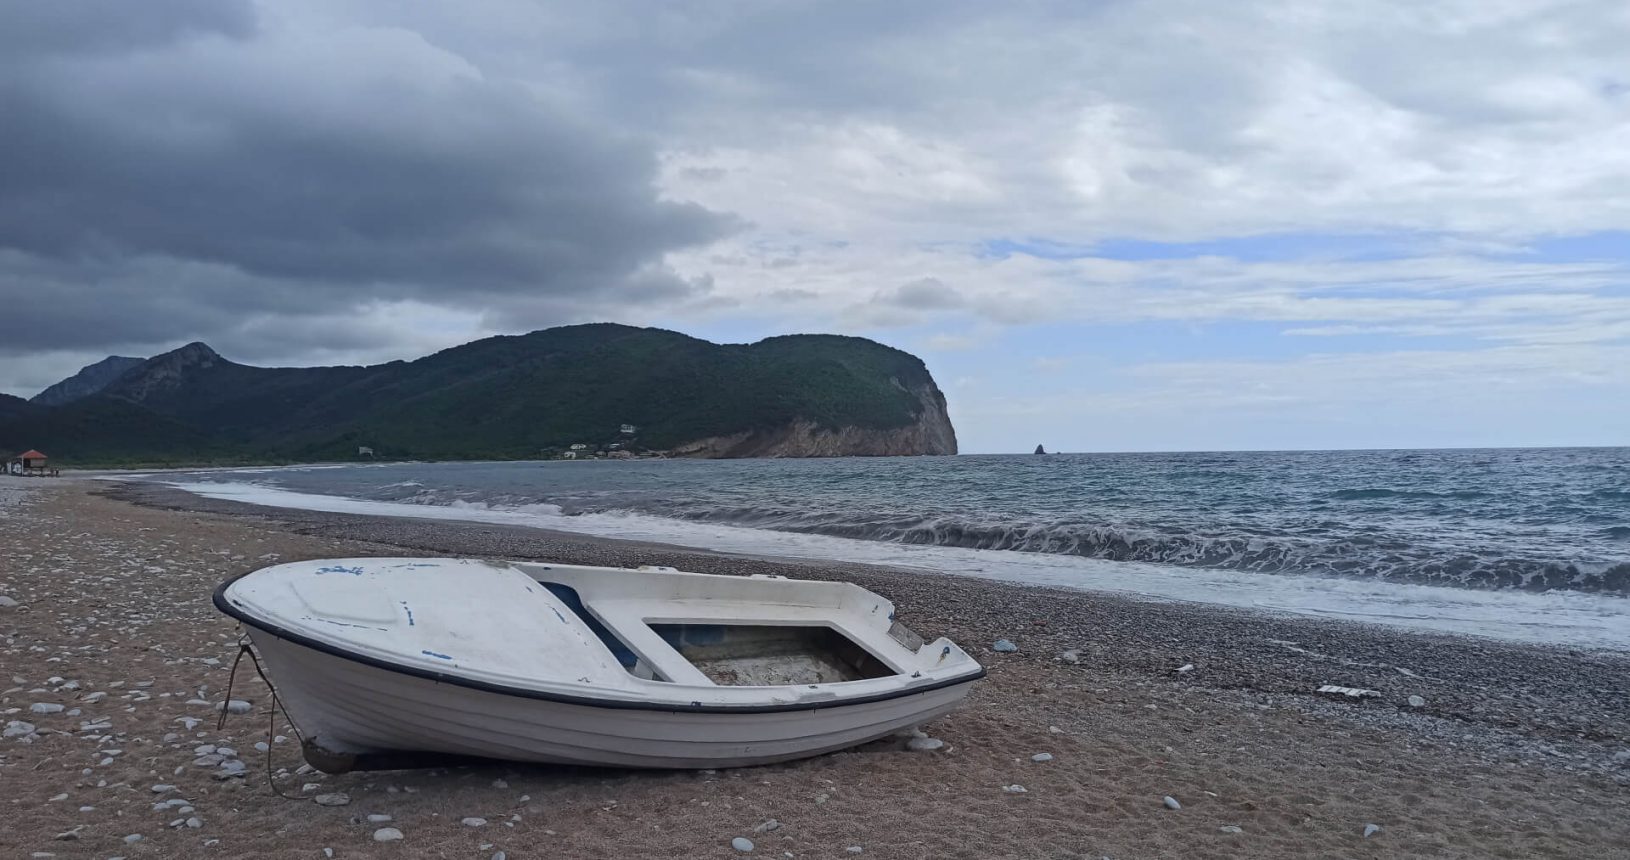 Buljarica Beach and the boat